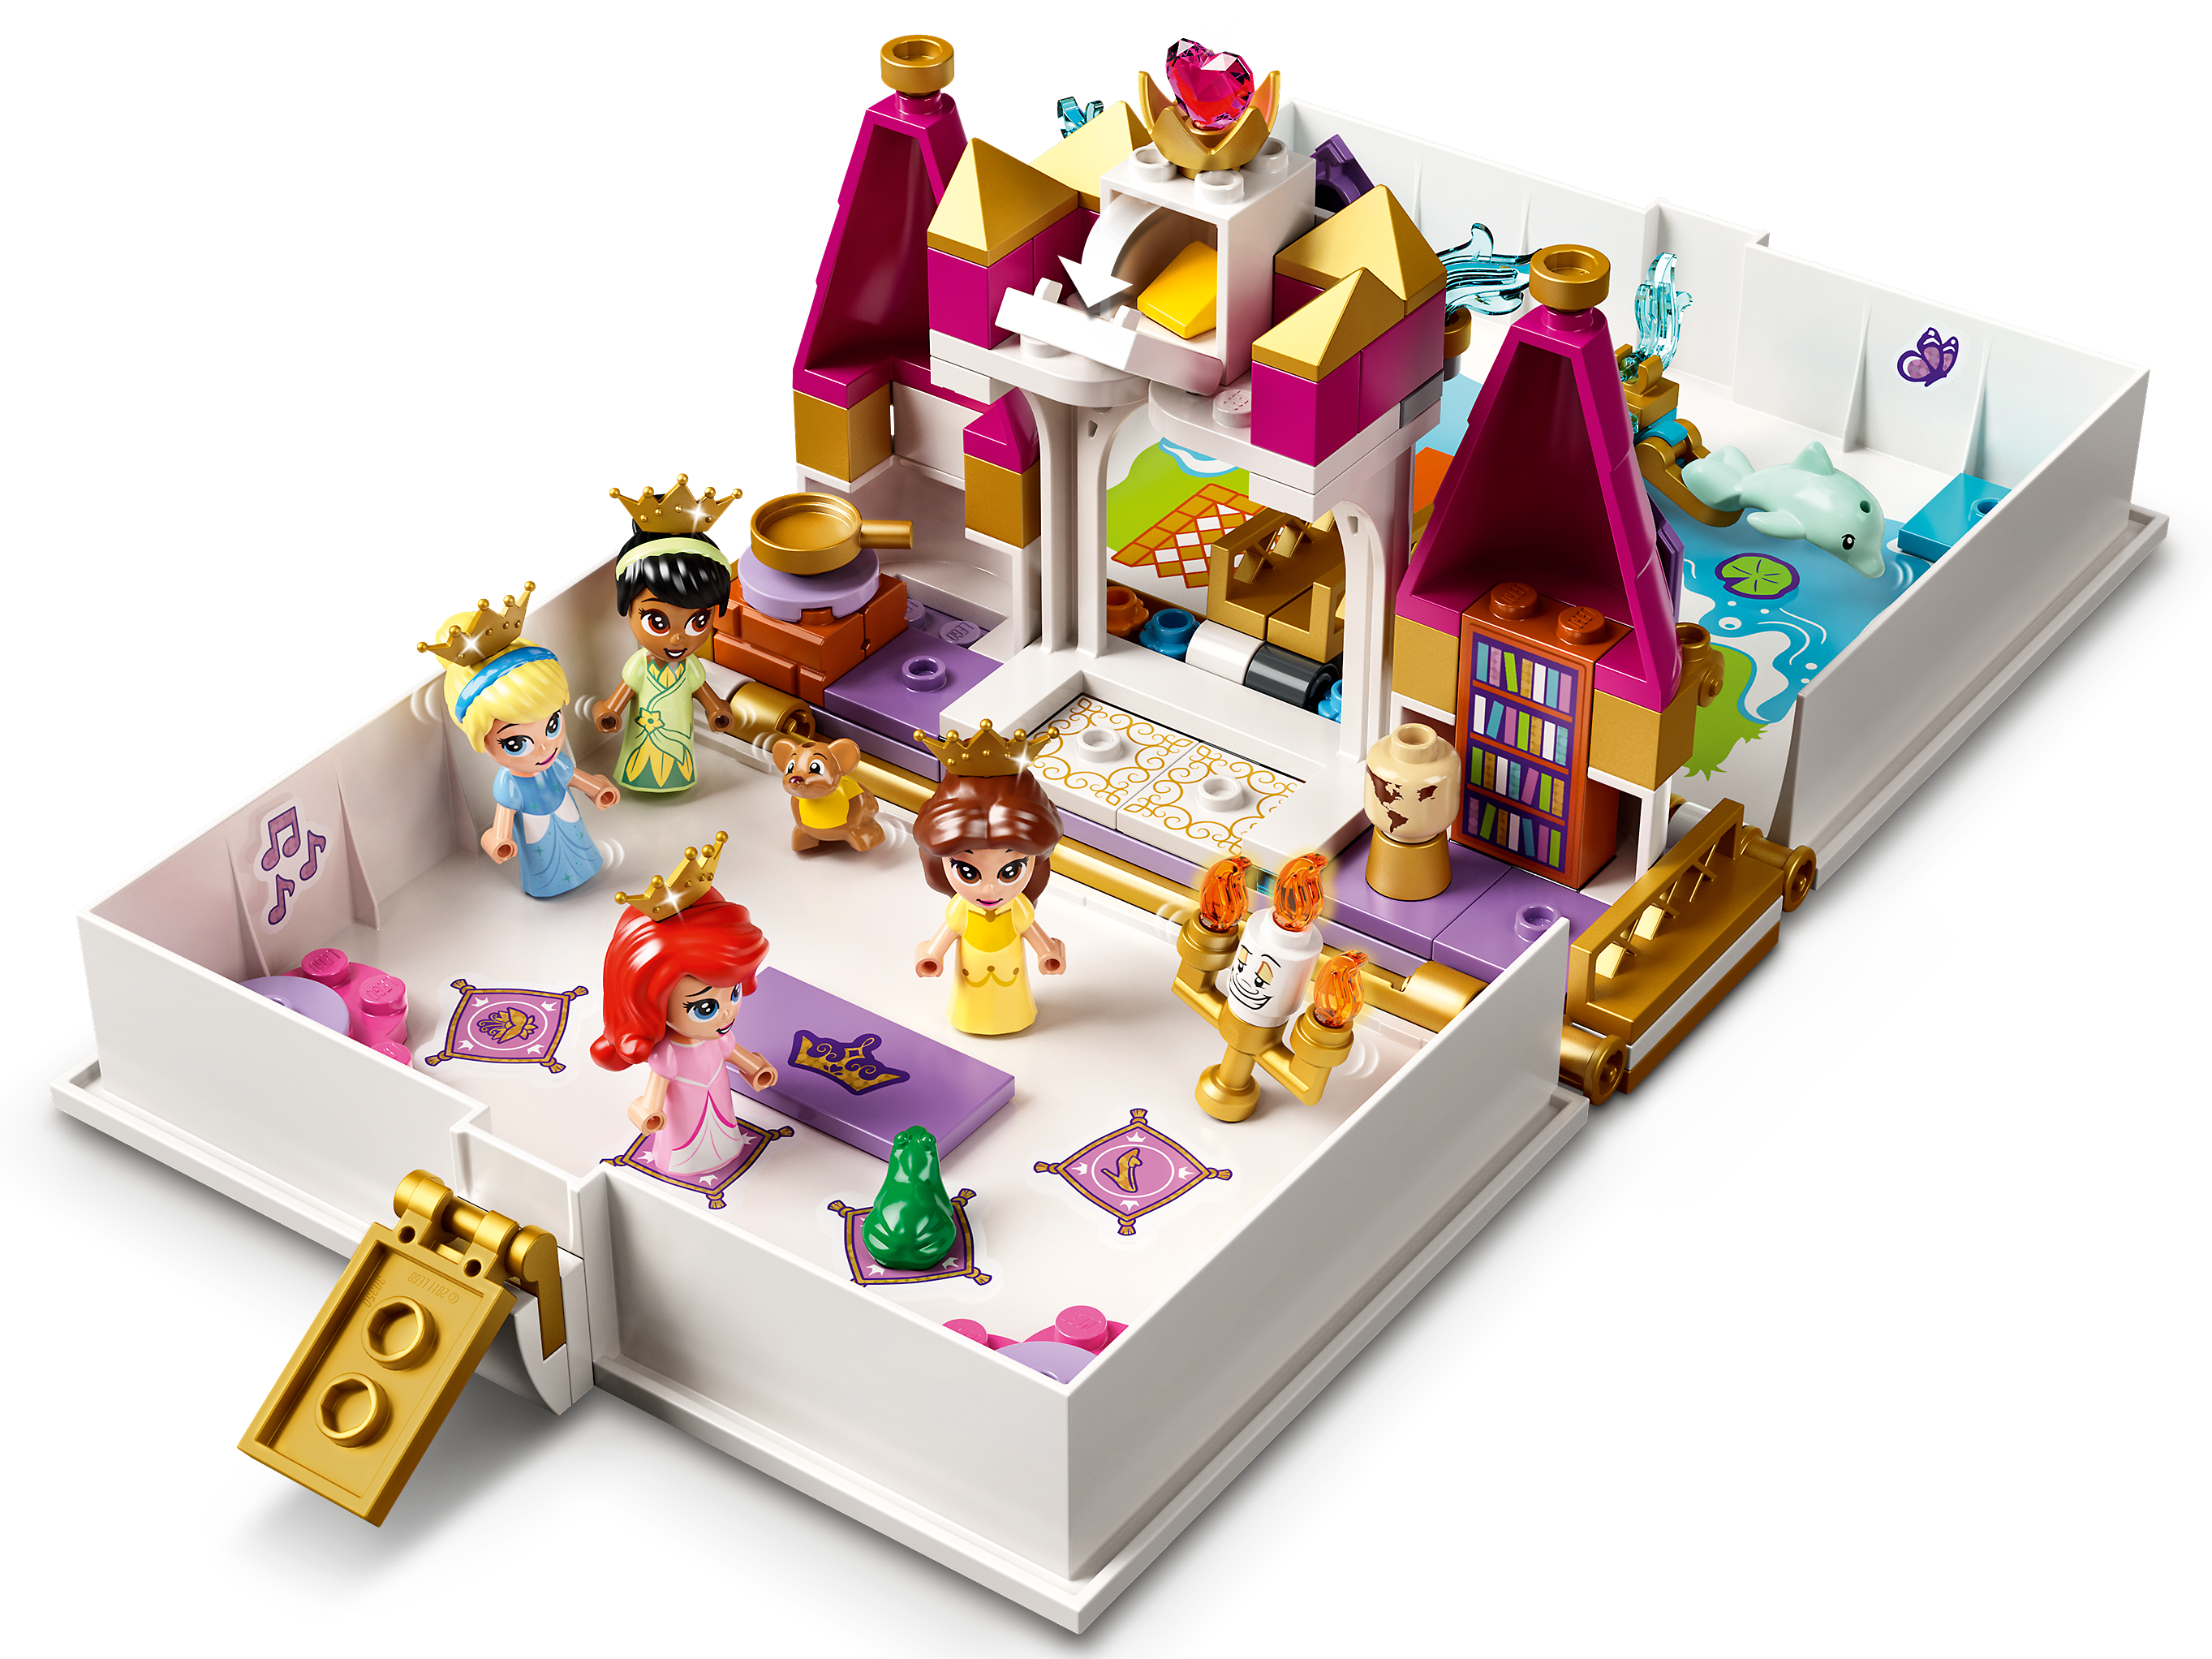 Bella Cenicienta y Tiana/'s Cuentos Adviento 43193 Lego Disney Princesa Ariel